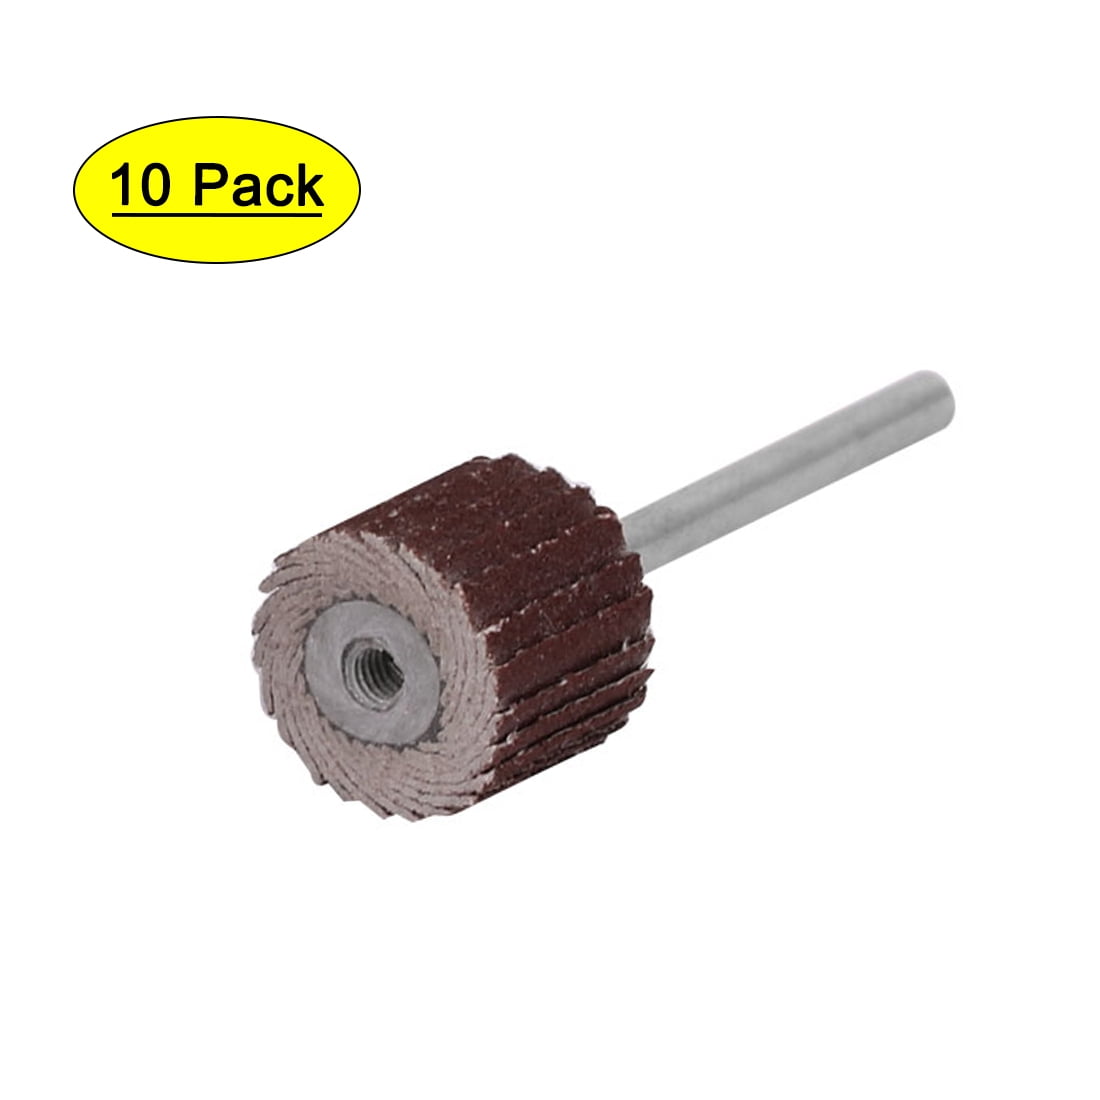 10pcs Polishing Sanding Bar Sandpaper Buffering Polisher Sticks for Model